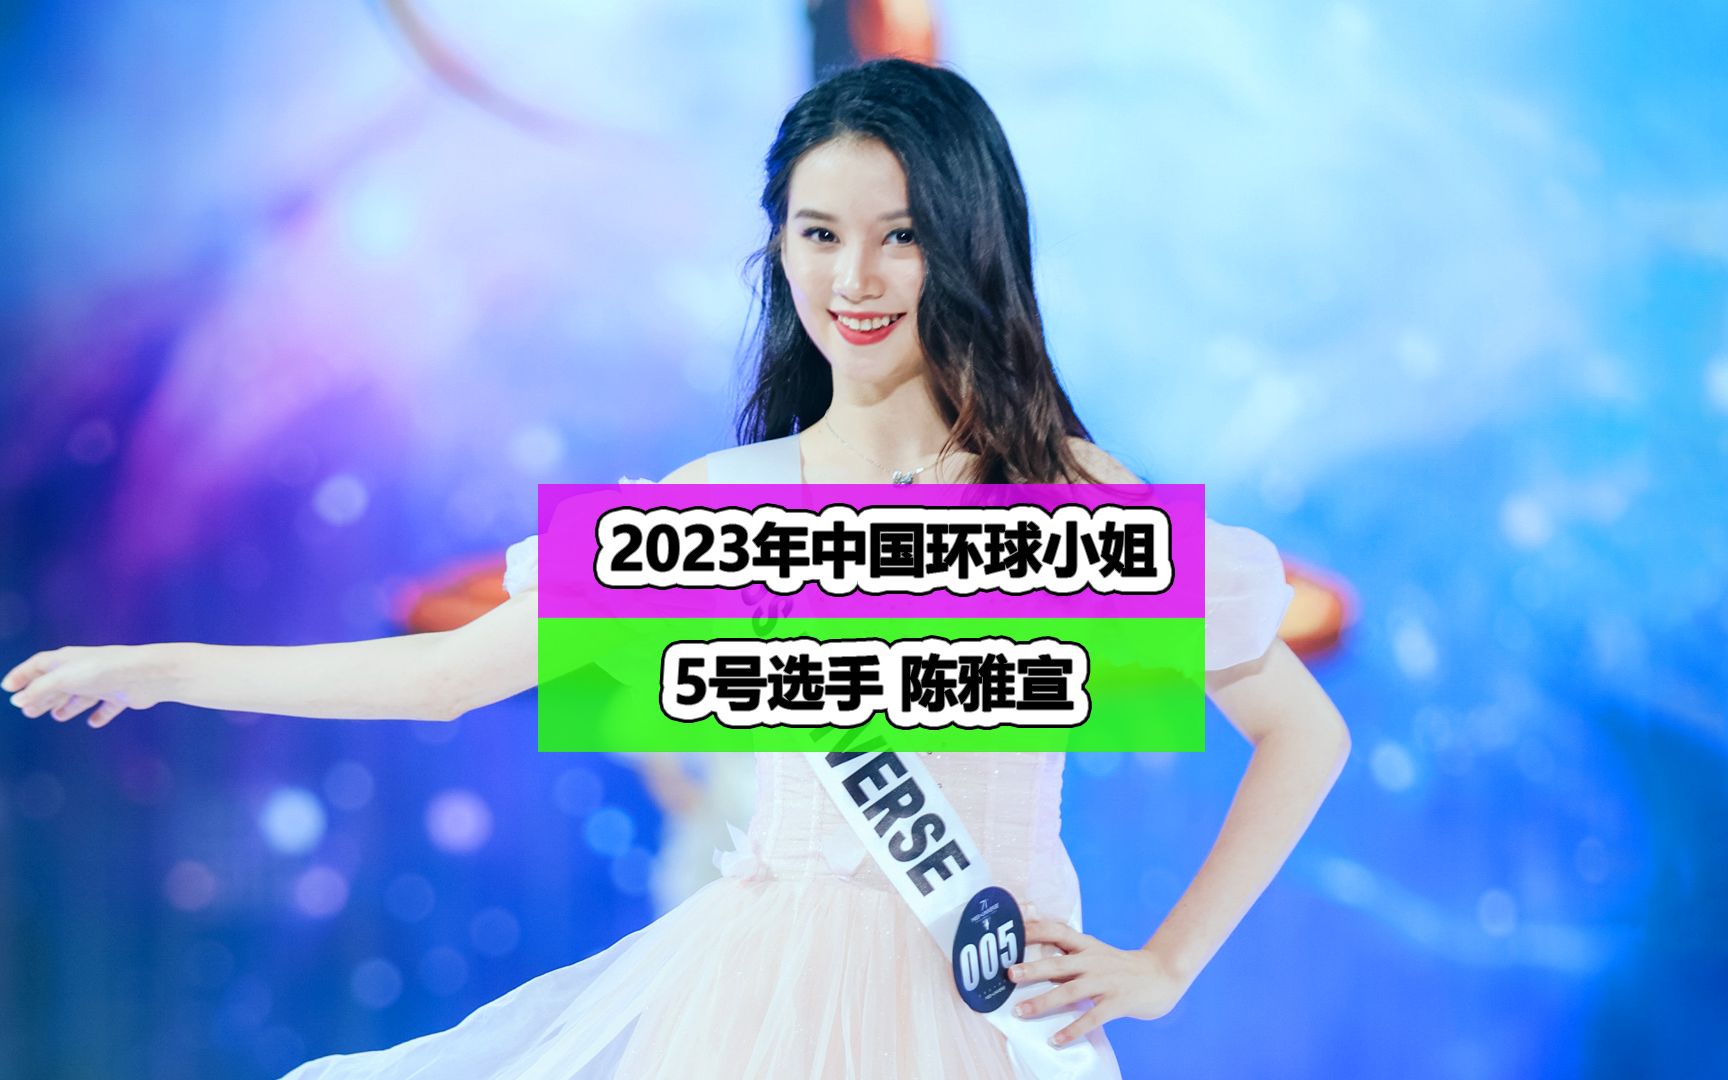 中华小姐环球大赛2022图片